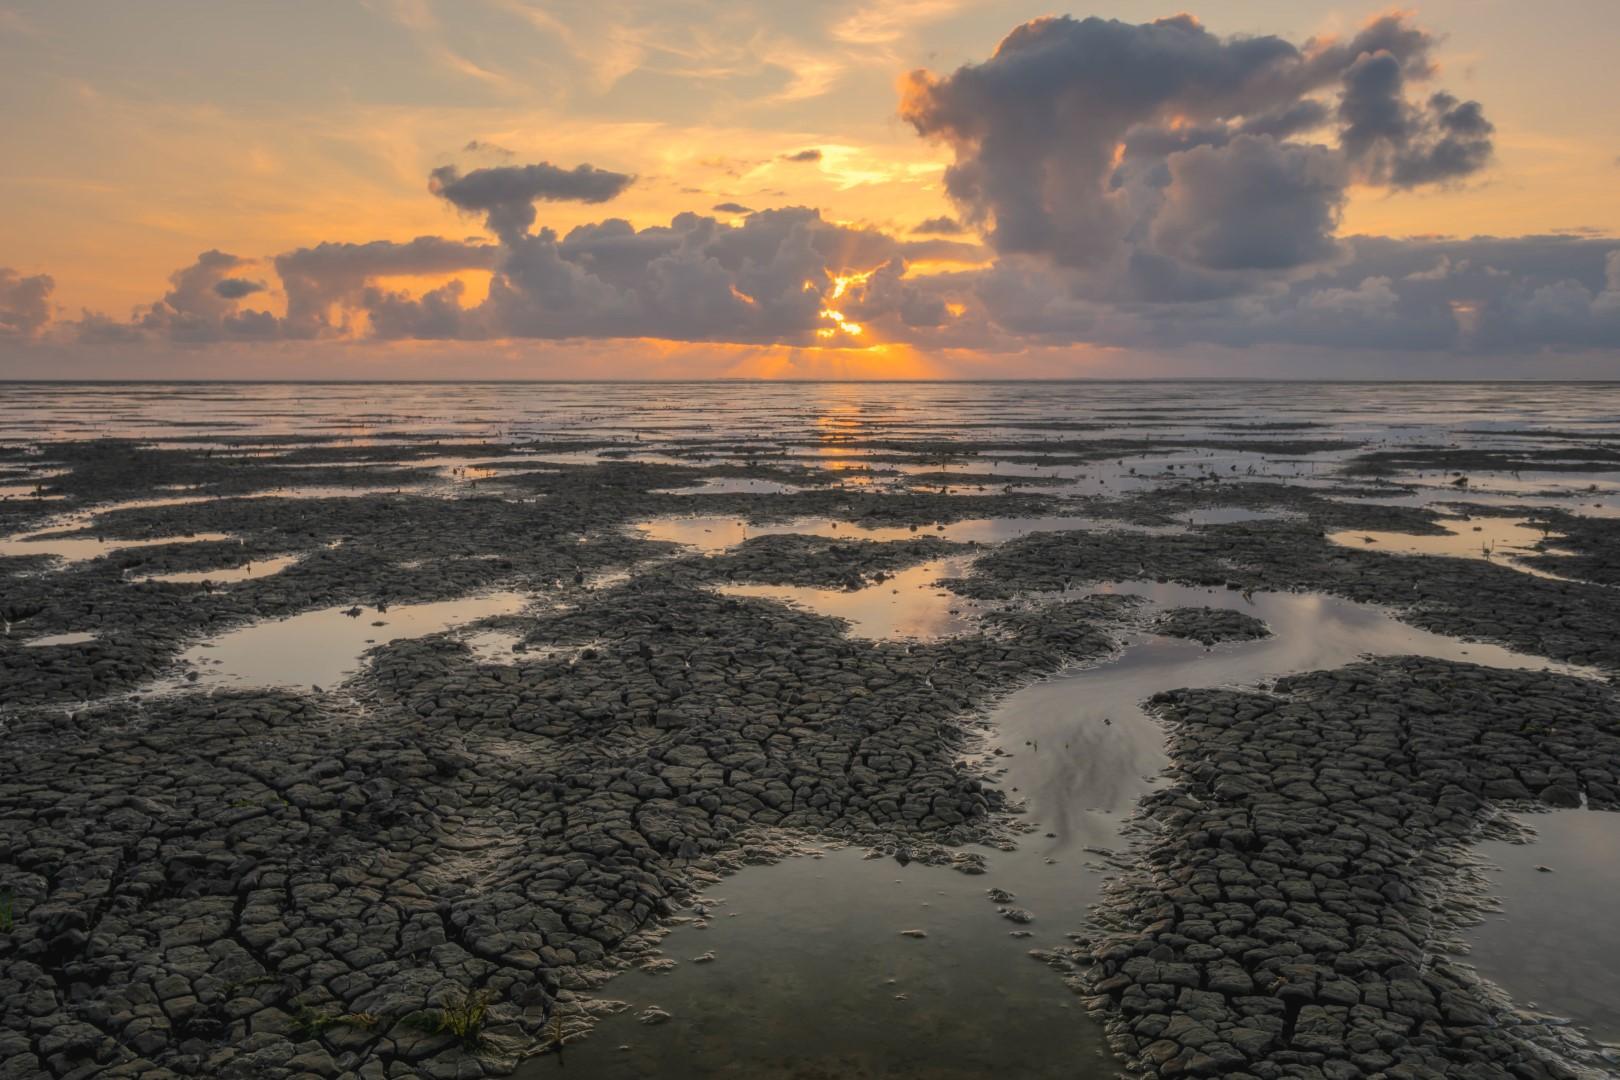 Deze foto is gemaakt op de Waddenzee nabij St. Jacobiparochie (Friesland, Nederland). De zon ging schitterend onder. Daarnaast was het ook eb, zodat er mooie structuren in de bodem zichtbaar werden. De Waddenzee is een schitterend gebied!